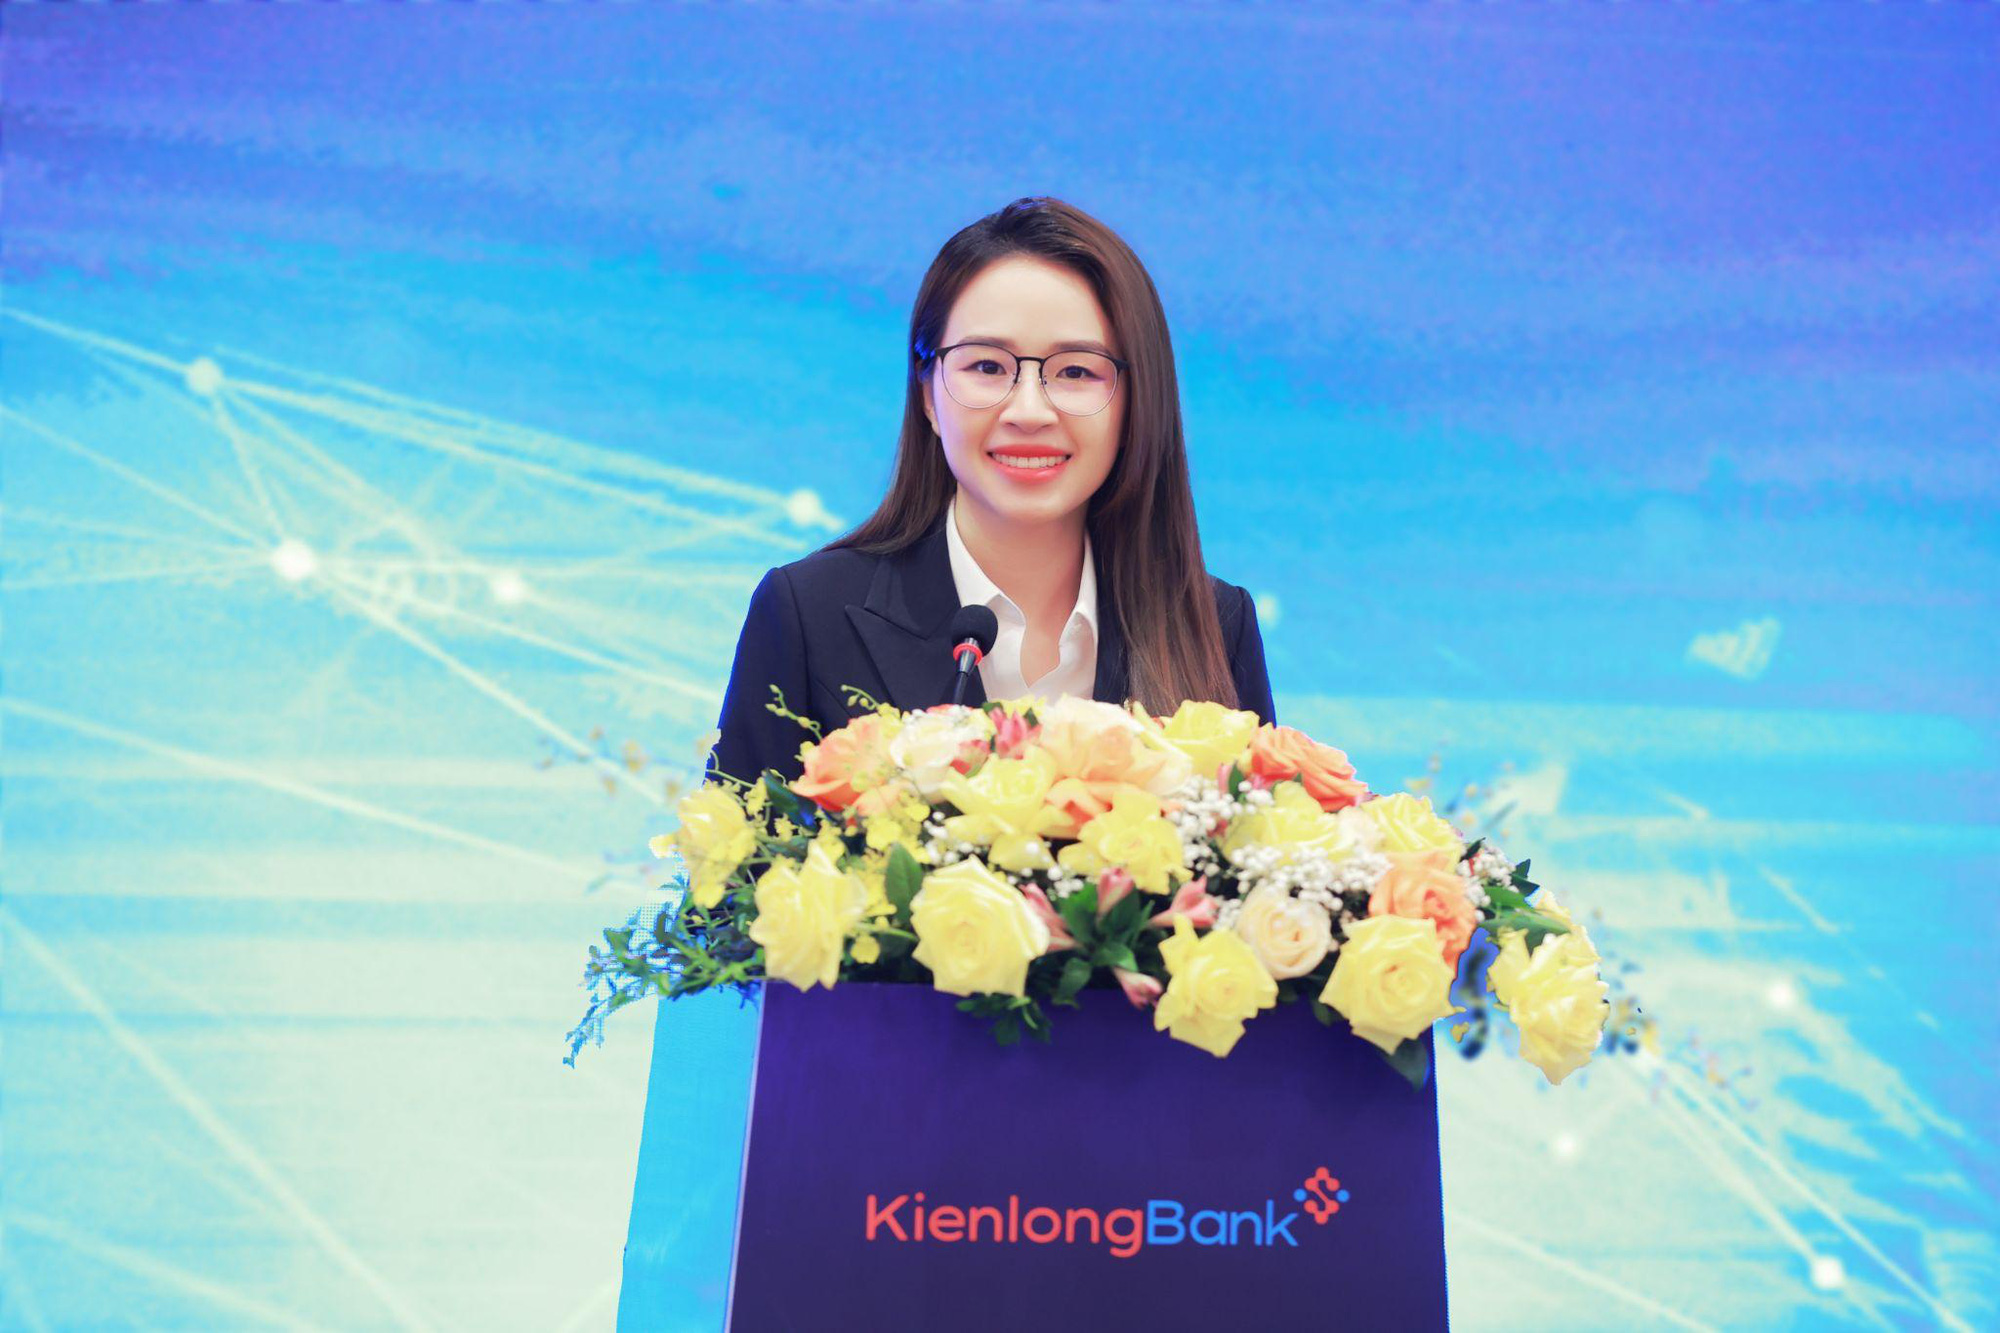 ĐHCĐ KienlongBank: Đặt mục tiêu lợi nhuận sau thuế 600 tỷ, thực hiện chia cổ tức tỷ lệ 16% - Ảnh 1.